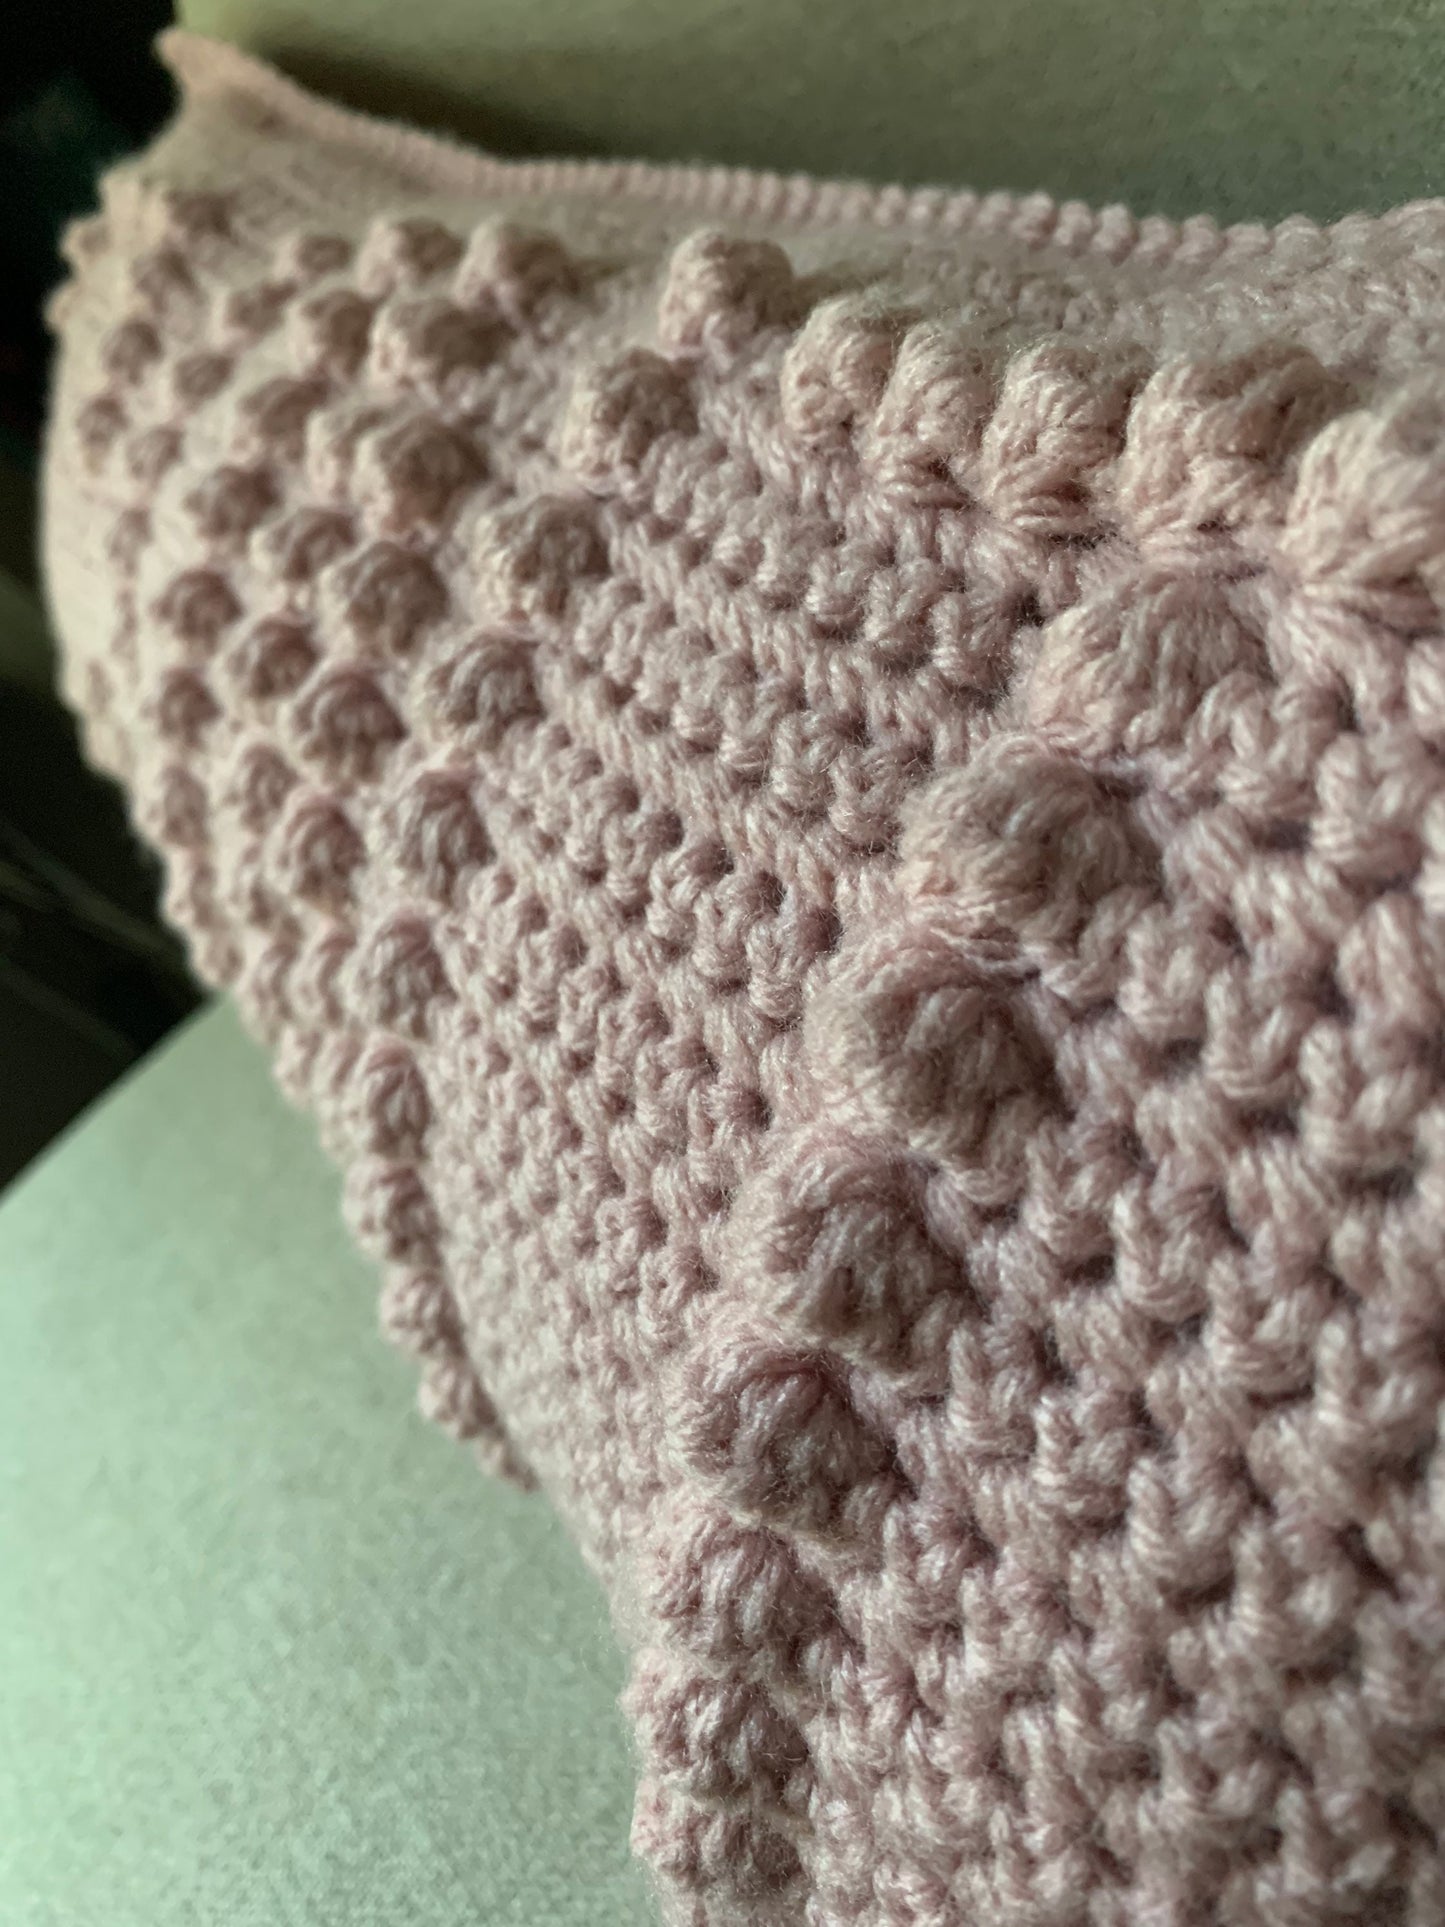 CROCHET PATTERN- C U Next Tuesday Crochet Pillow